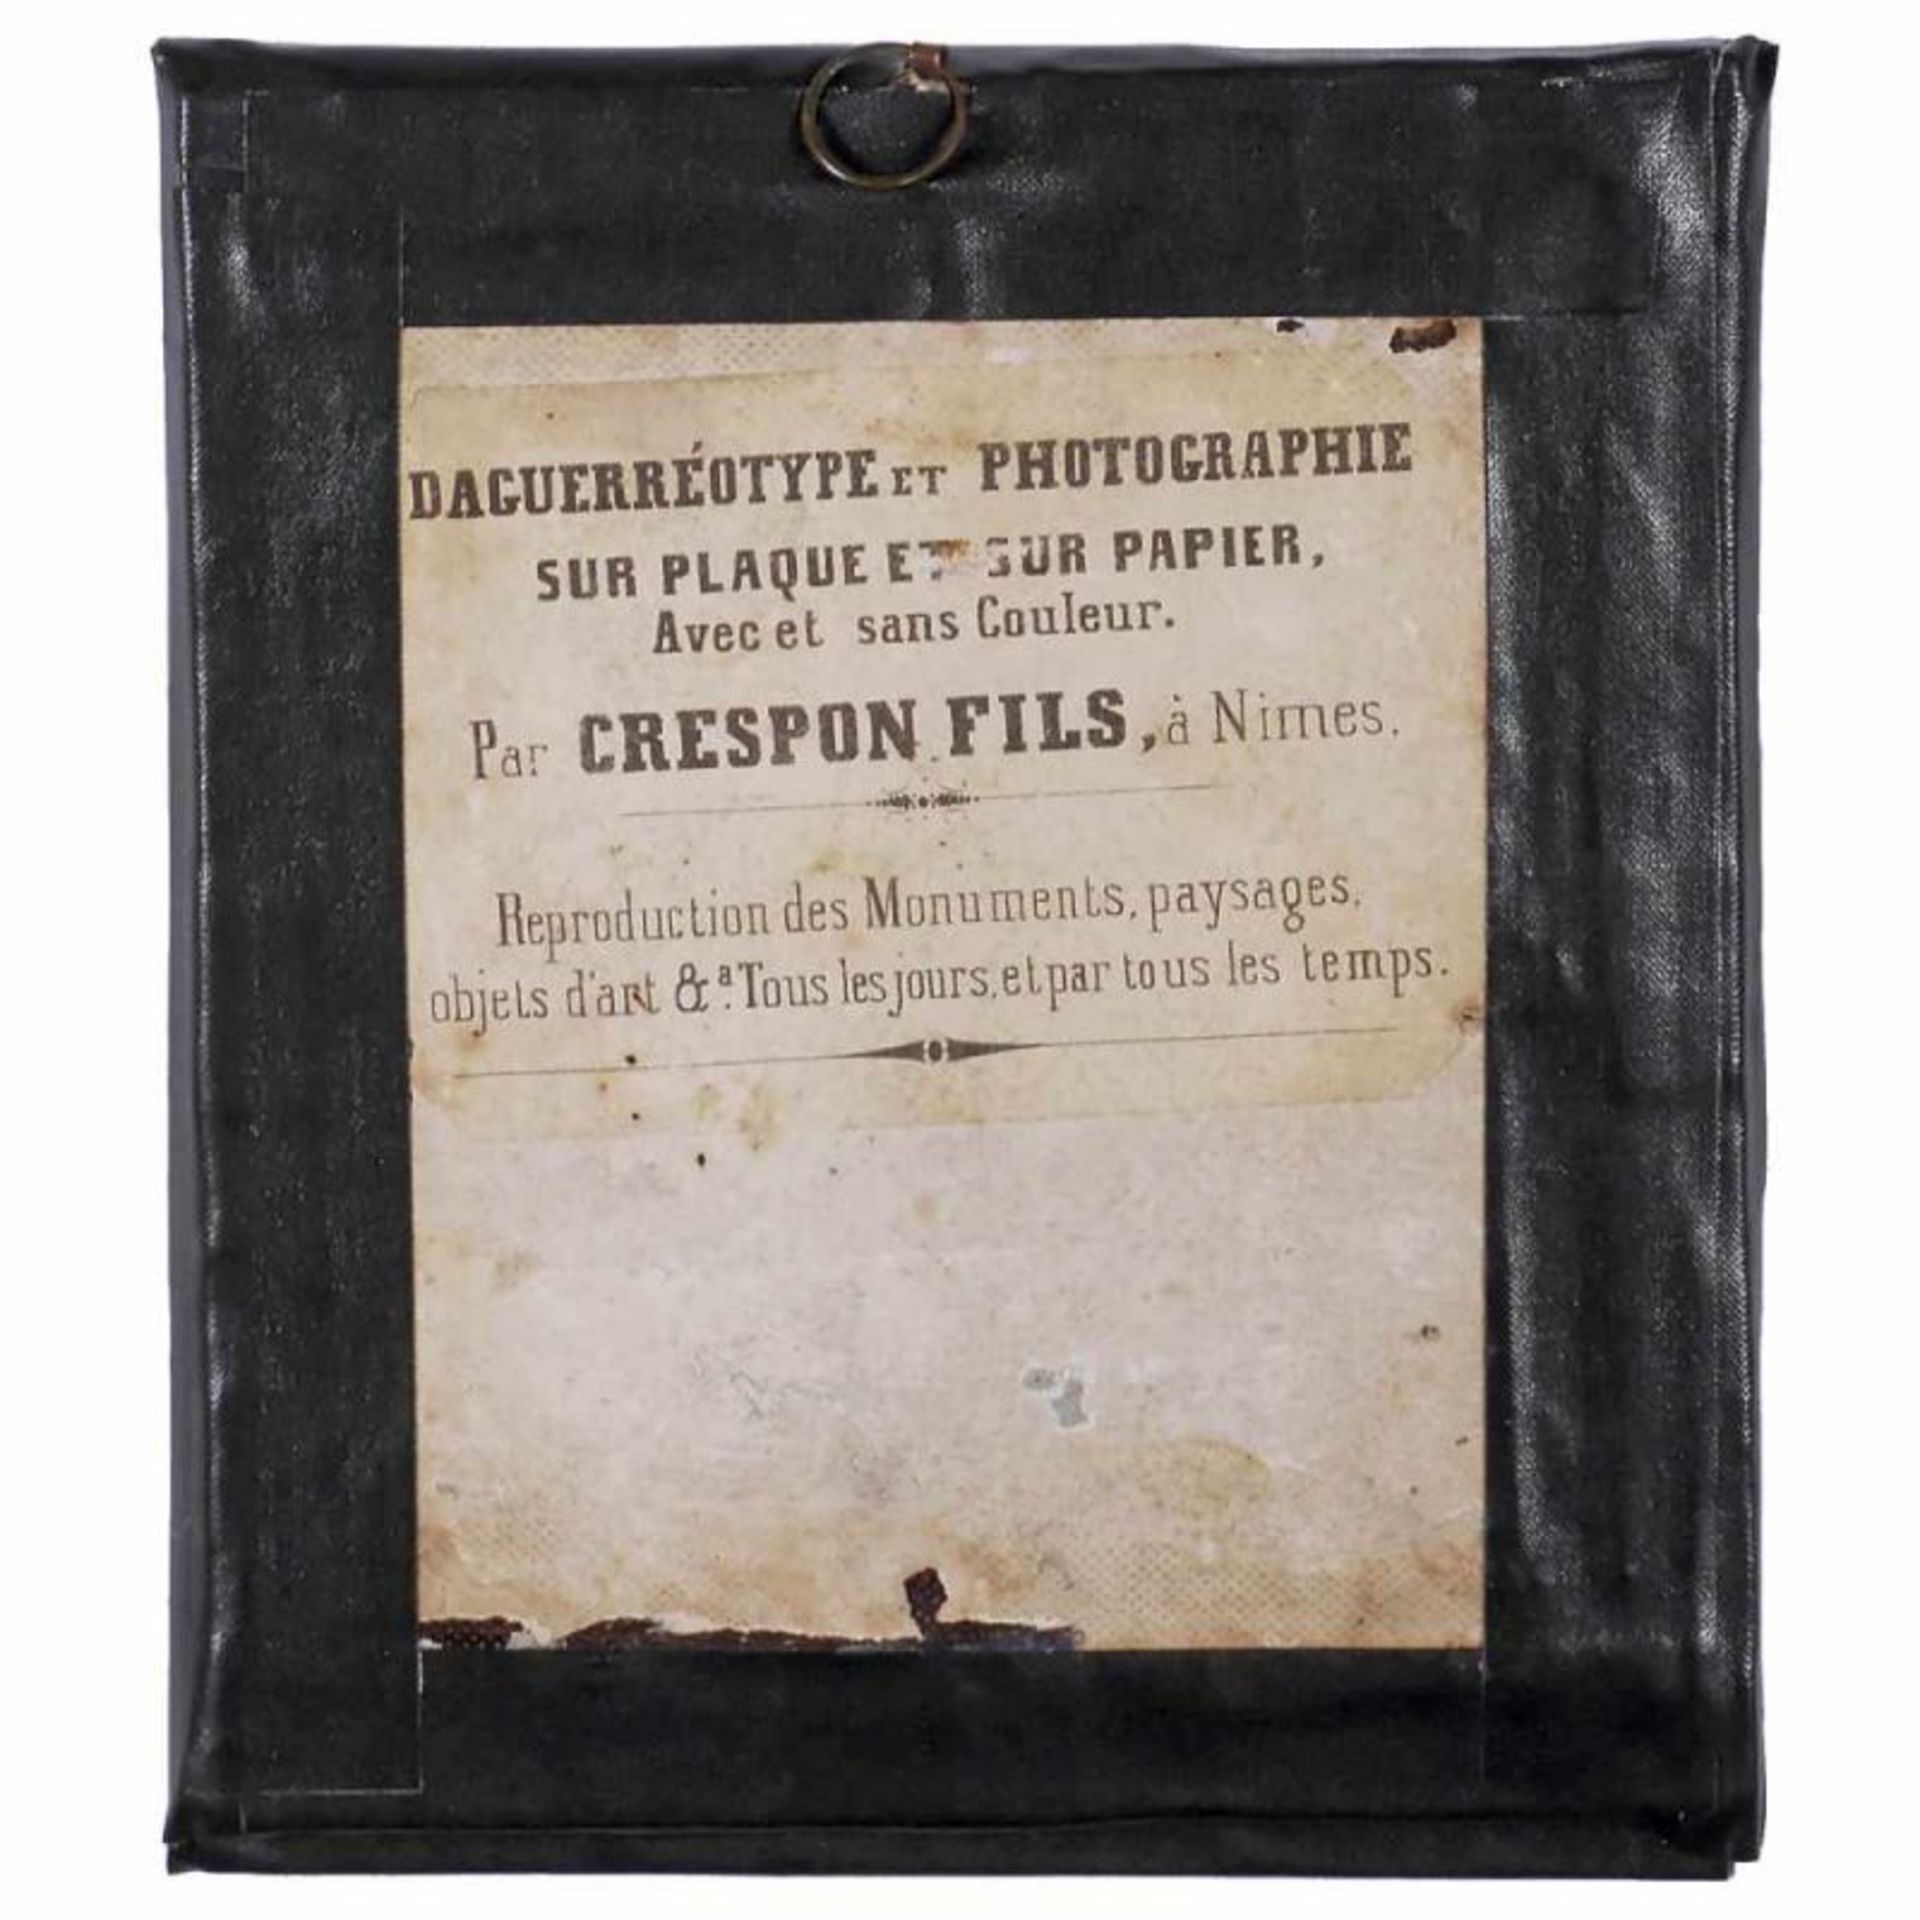 Daguerreotypie von Crespon Fils, um 1845 Antoine Crespon, à Nimes (der erste Photograph aus Nimes, - Bild 2 aus 2